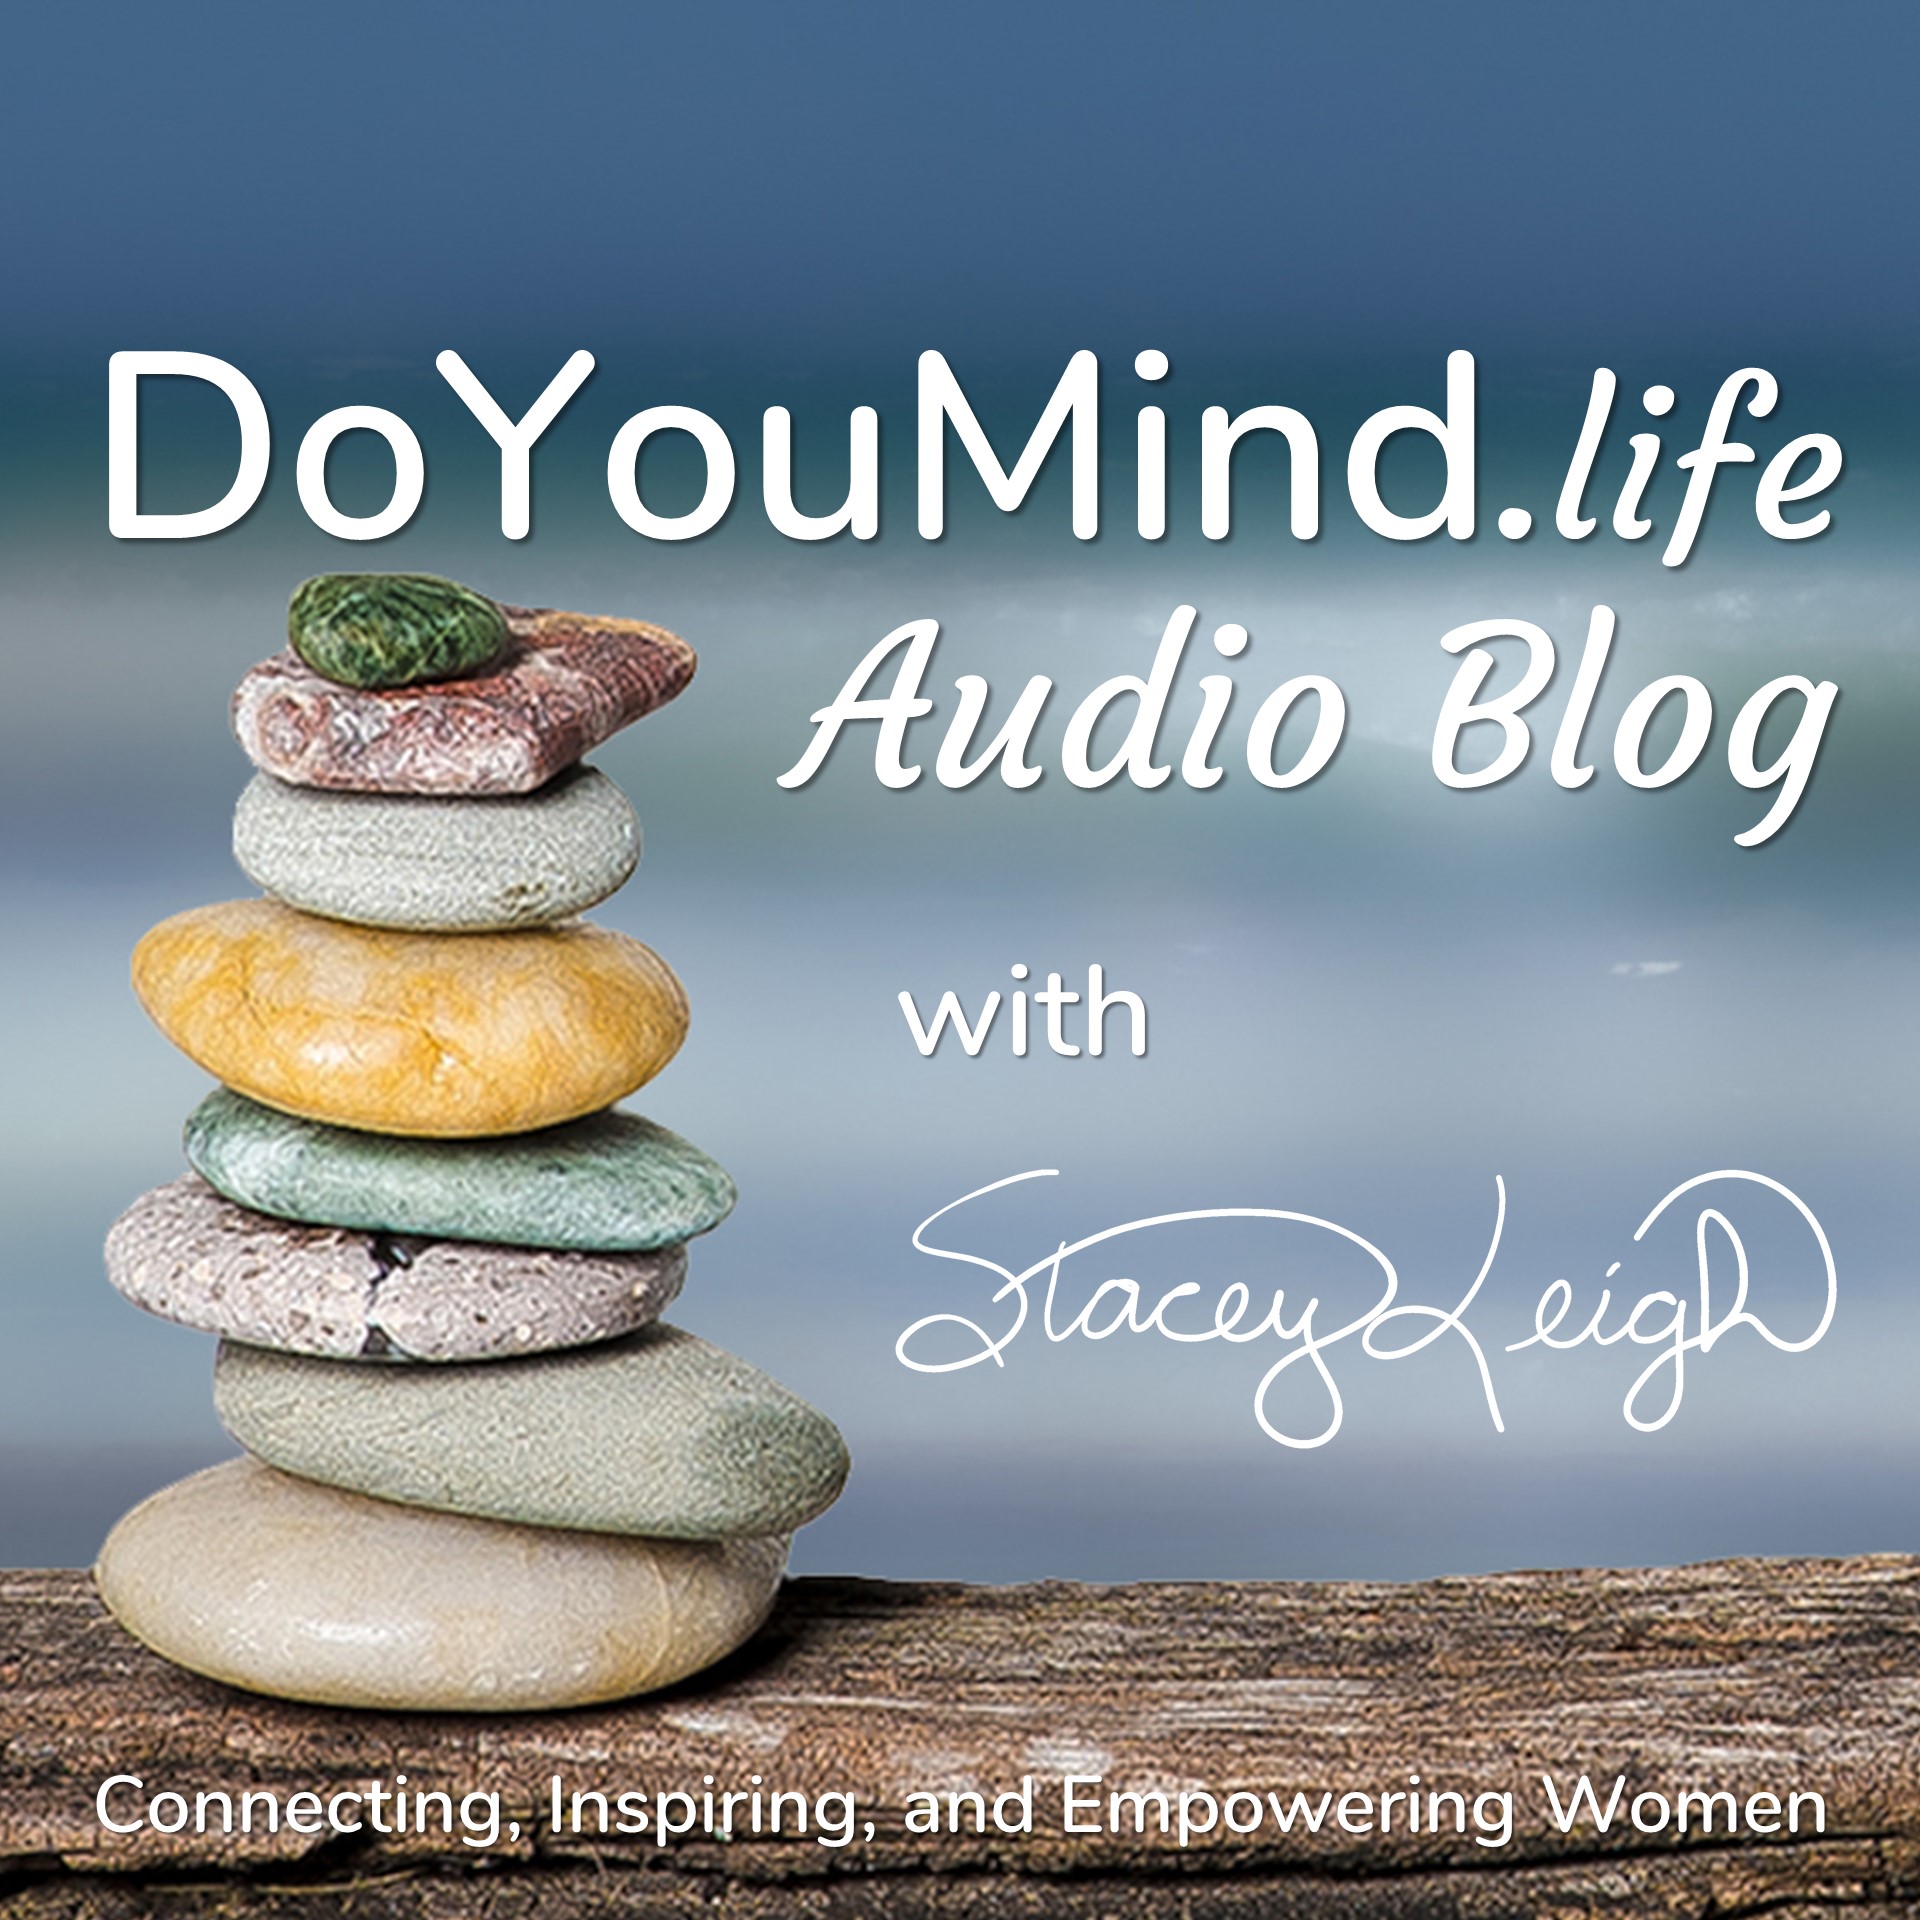 DoYouMind.life Audio Blog